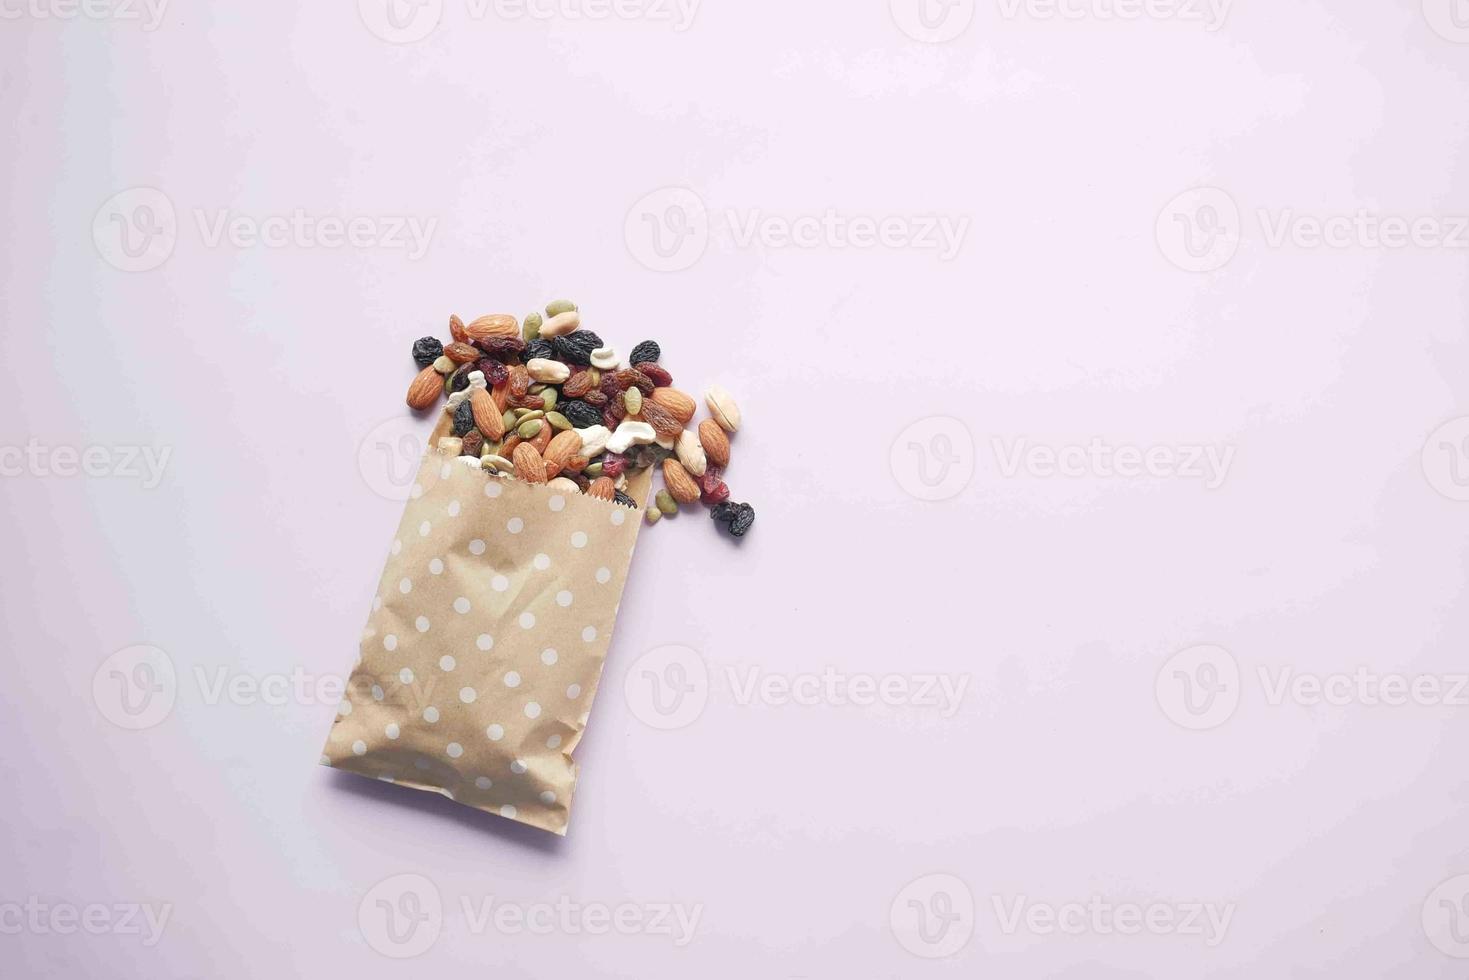 ovanifrån av många blandade nötter som spills från ett paket foto